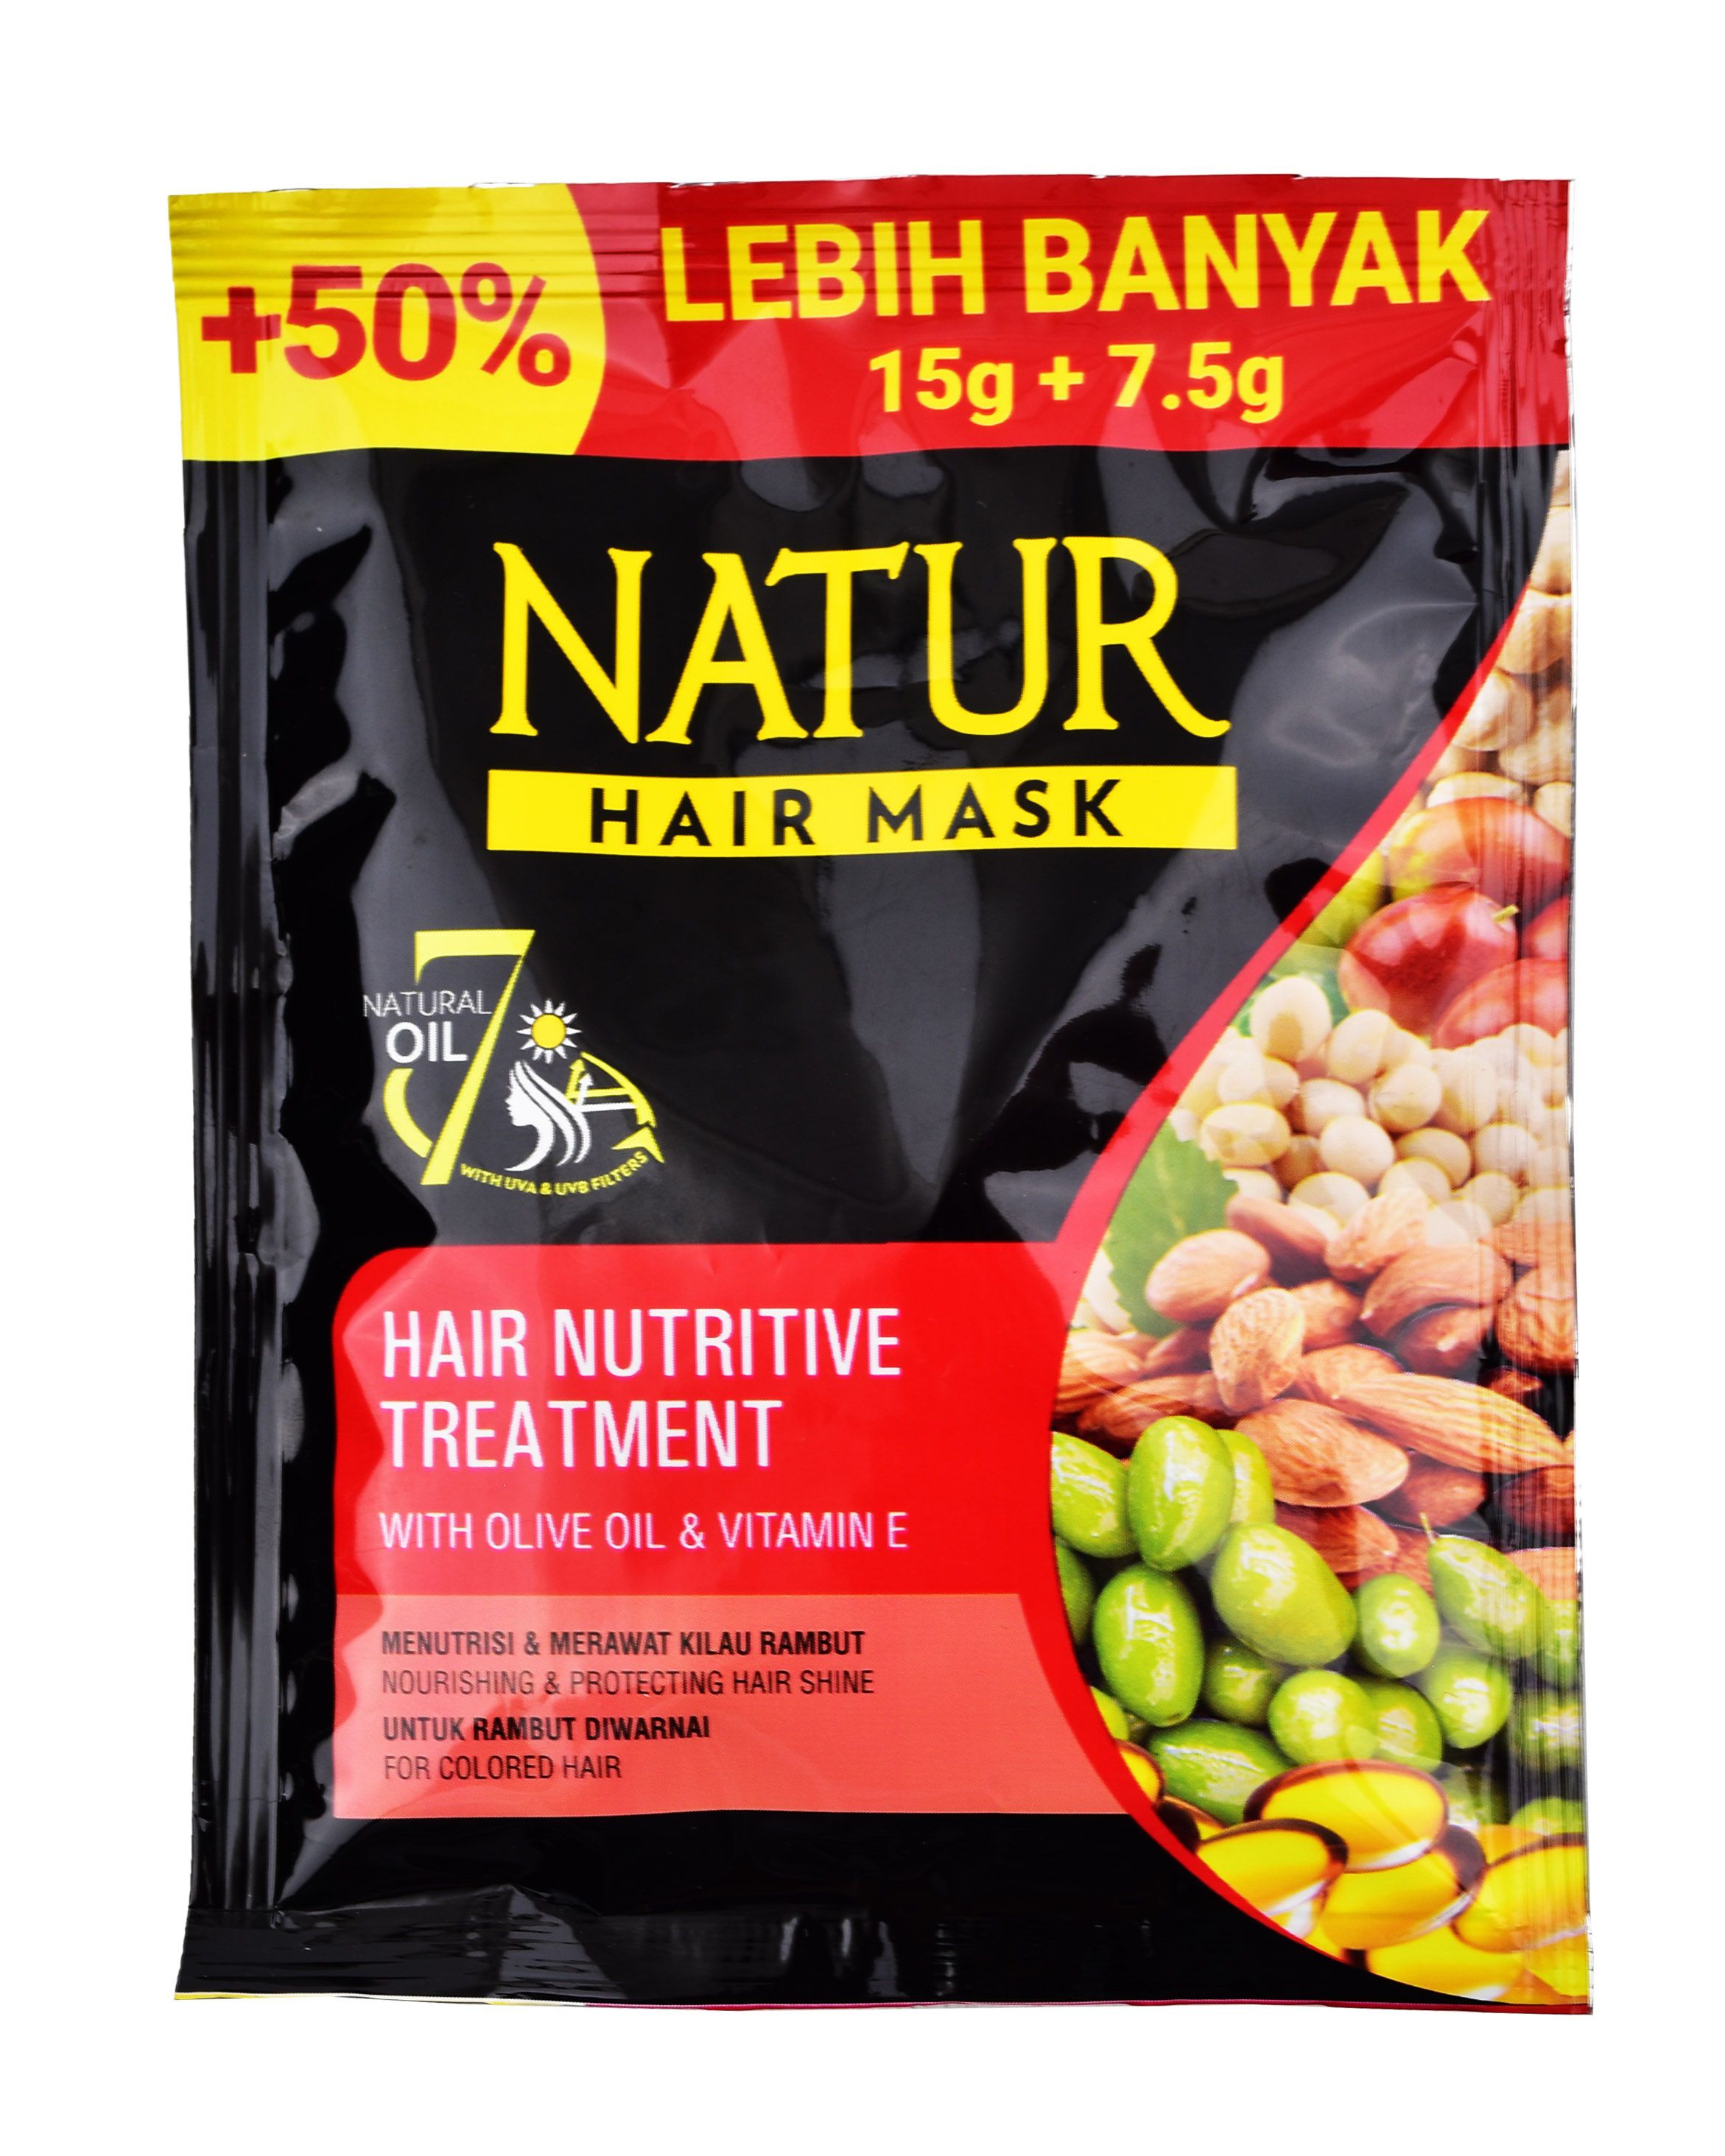 Rekomendasi Hair Mask untuk Rambut Kering - Natur Hair Mask Olive Oil Vitamin E